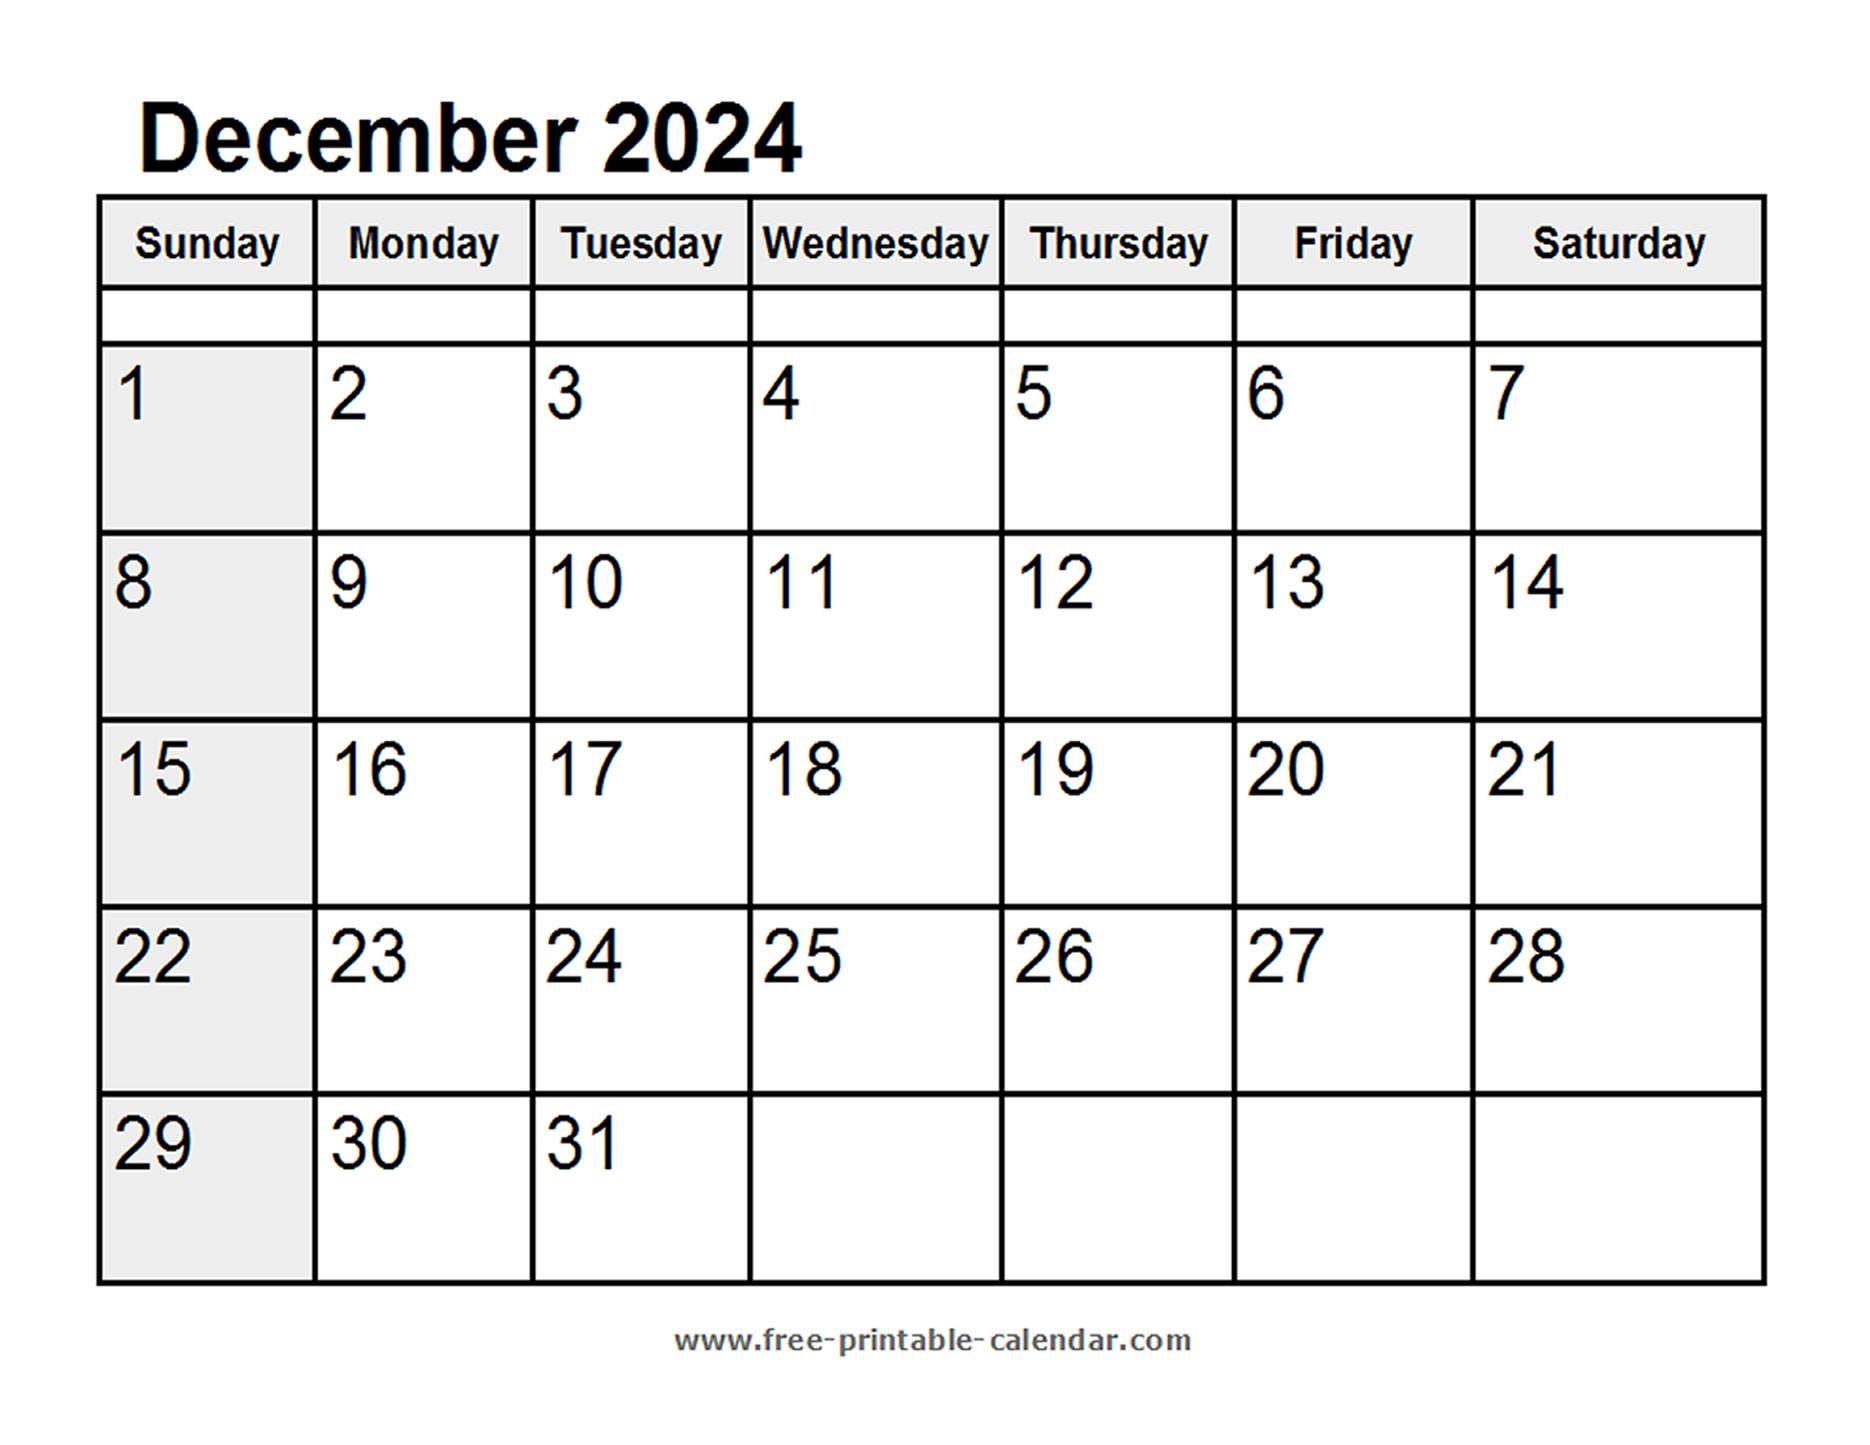 Calendar December 2024 - Free-printable-calendar.com